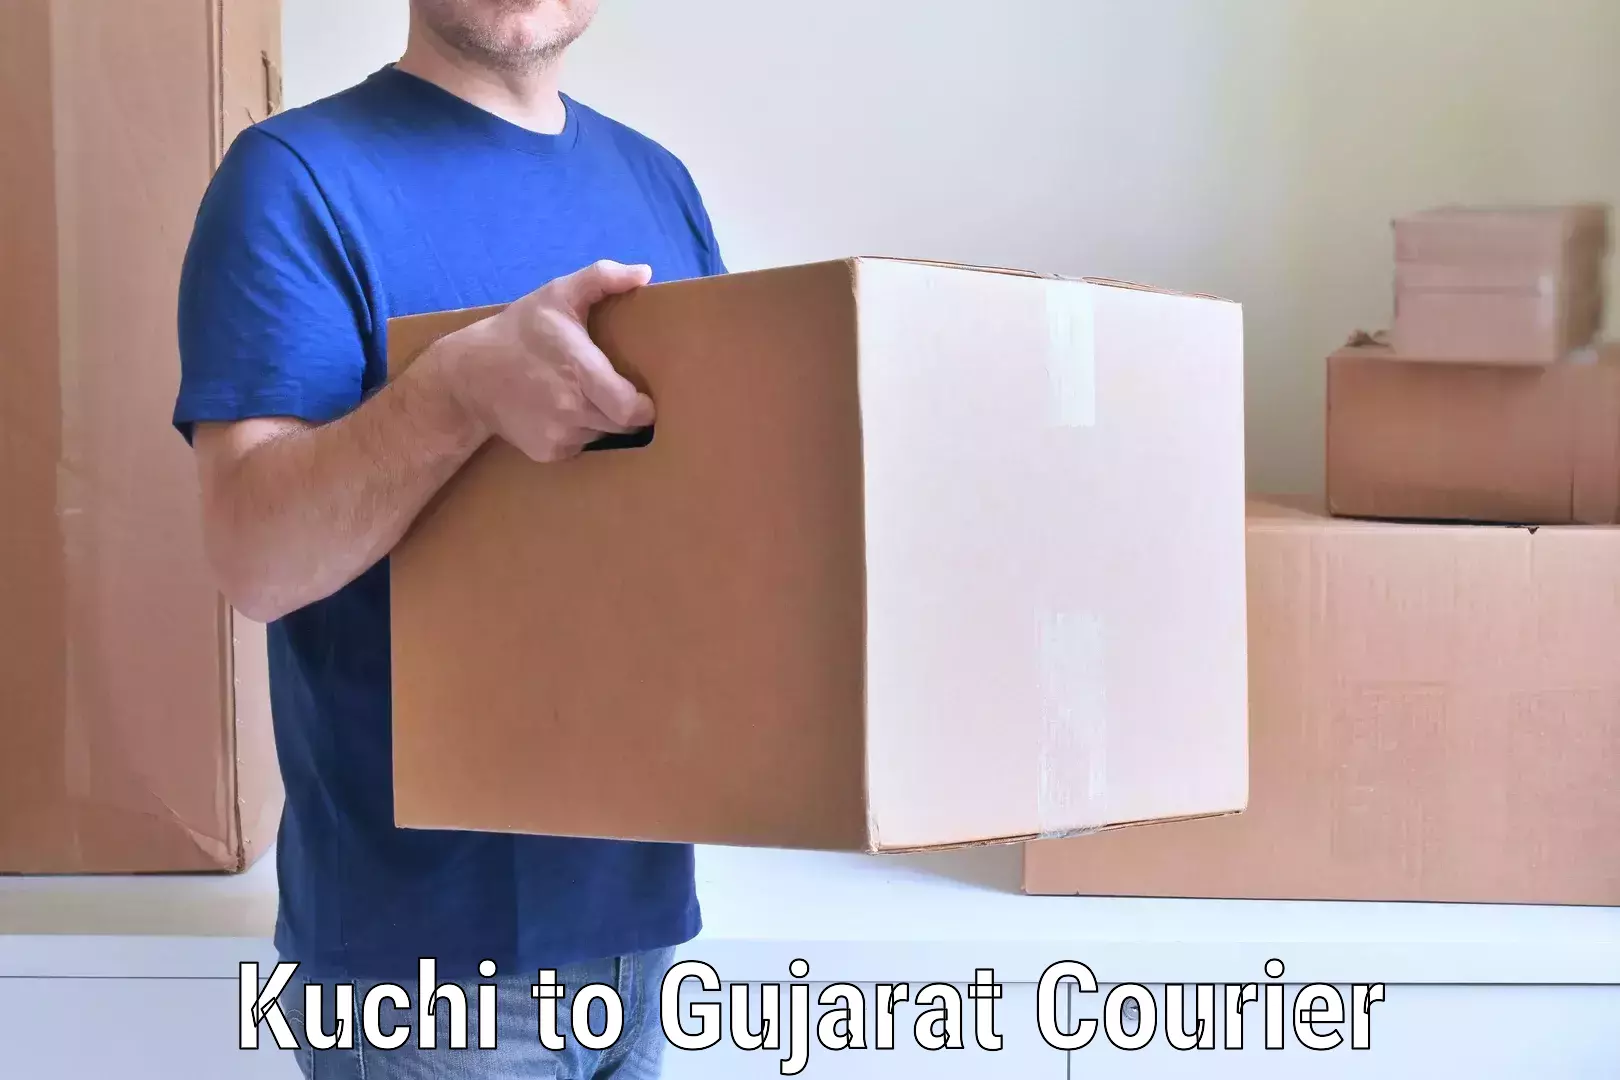 Quick household moving Kuchi to Udhana